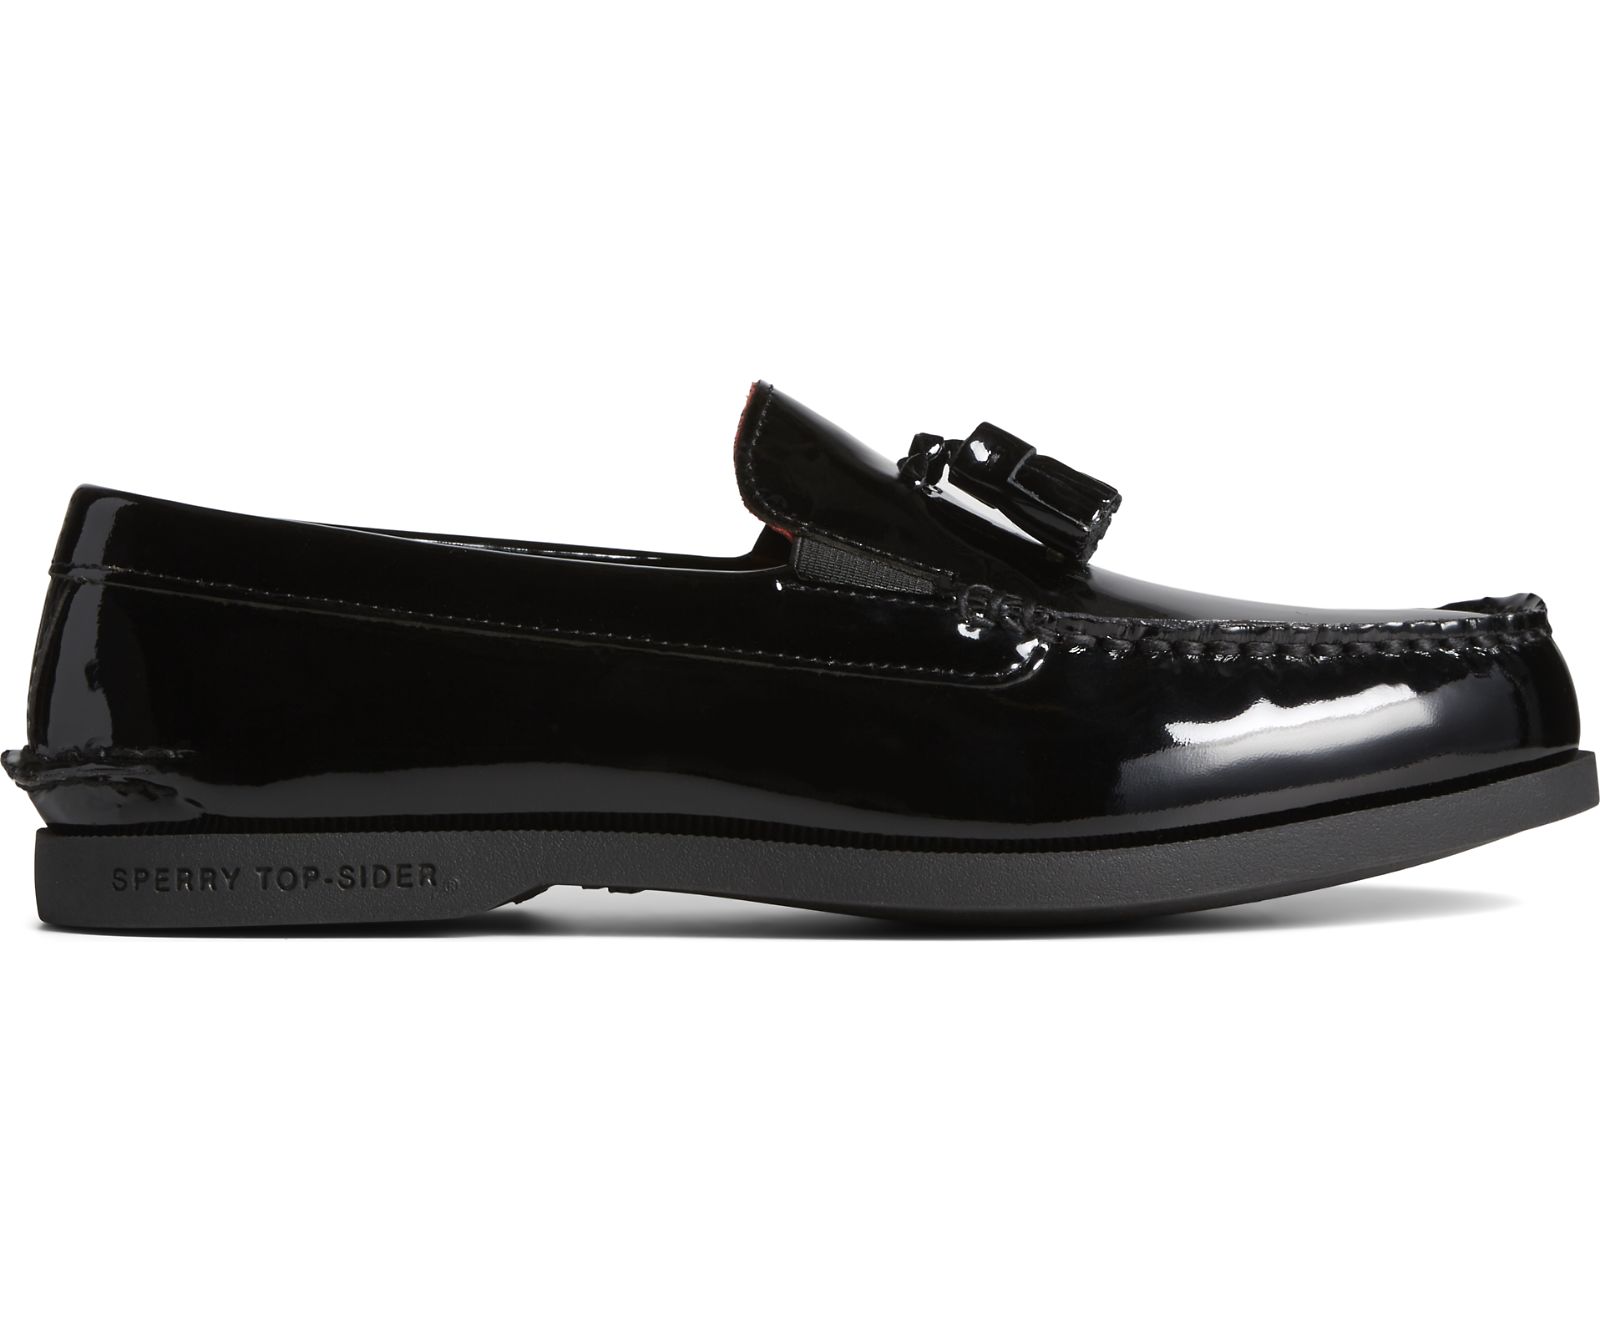 Men's Cloud Tassel Loafer - Patent Black